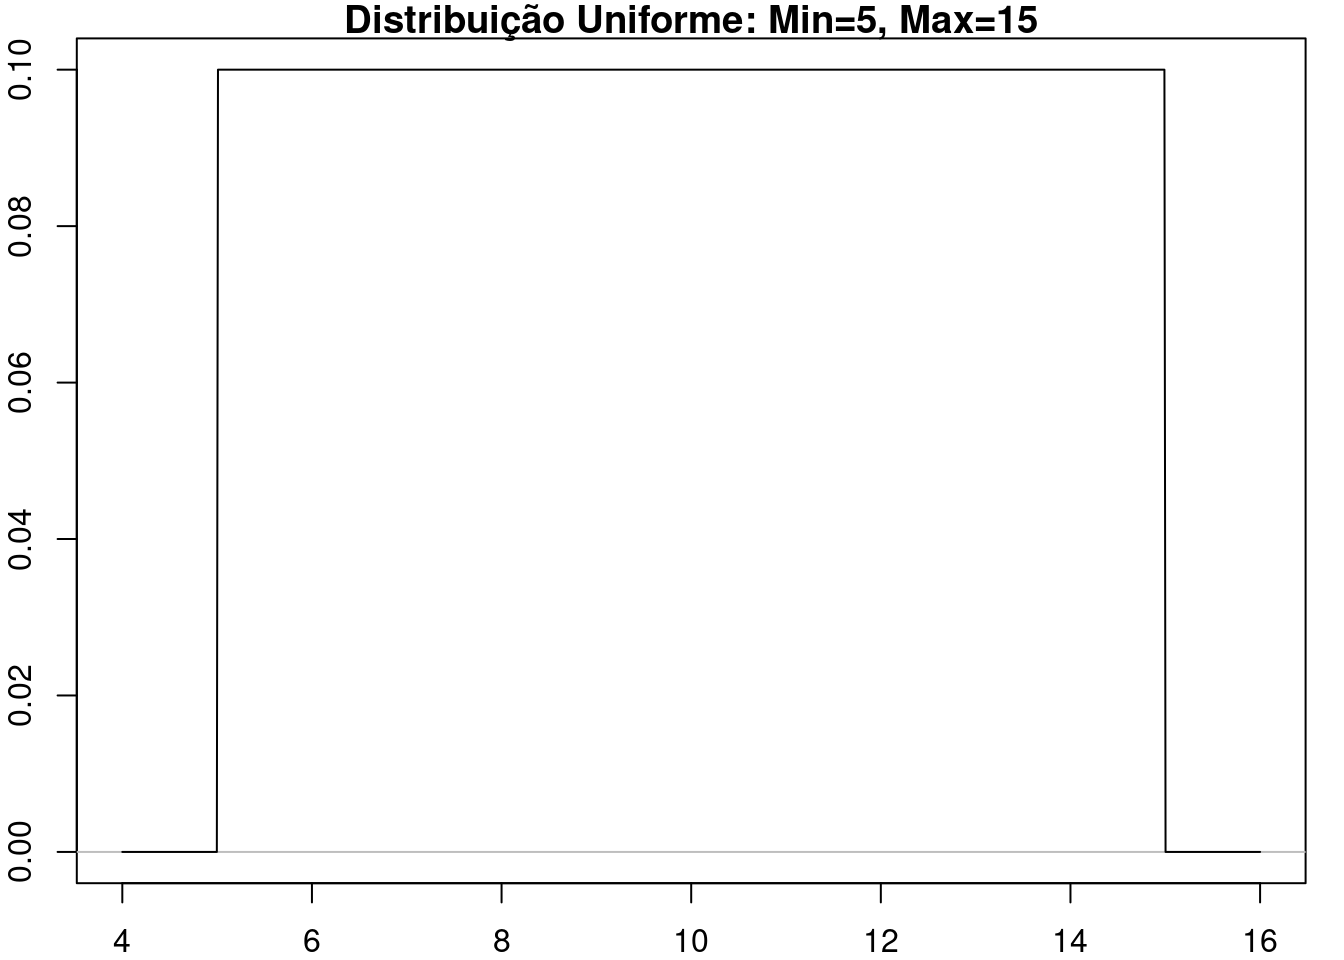 Distribuição Uniforme com min = 5,0 e max = 15,0.